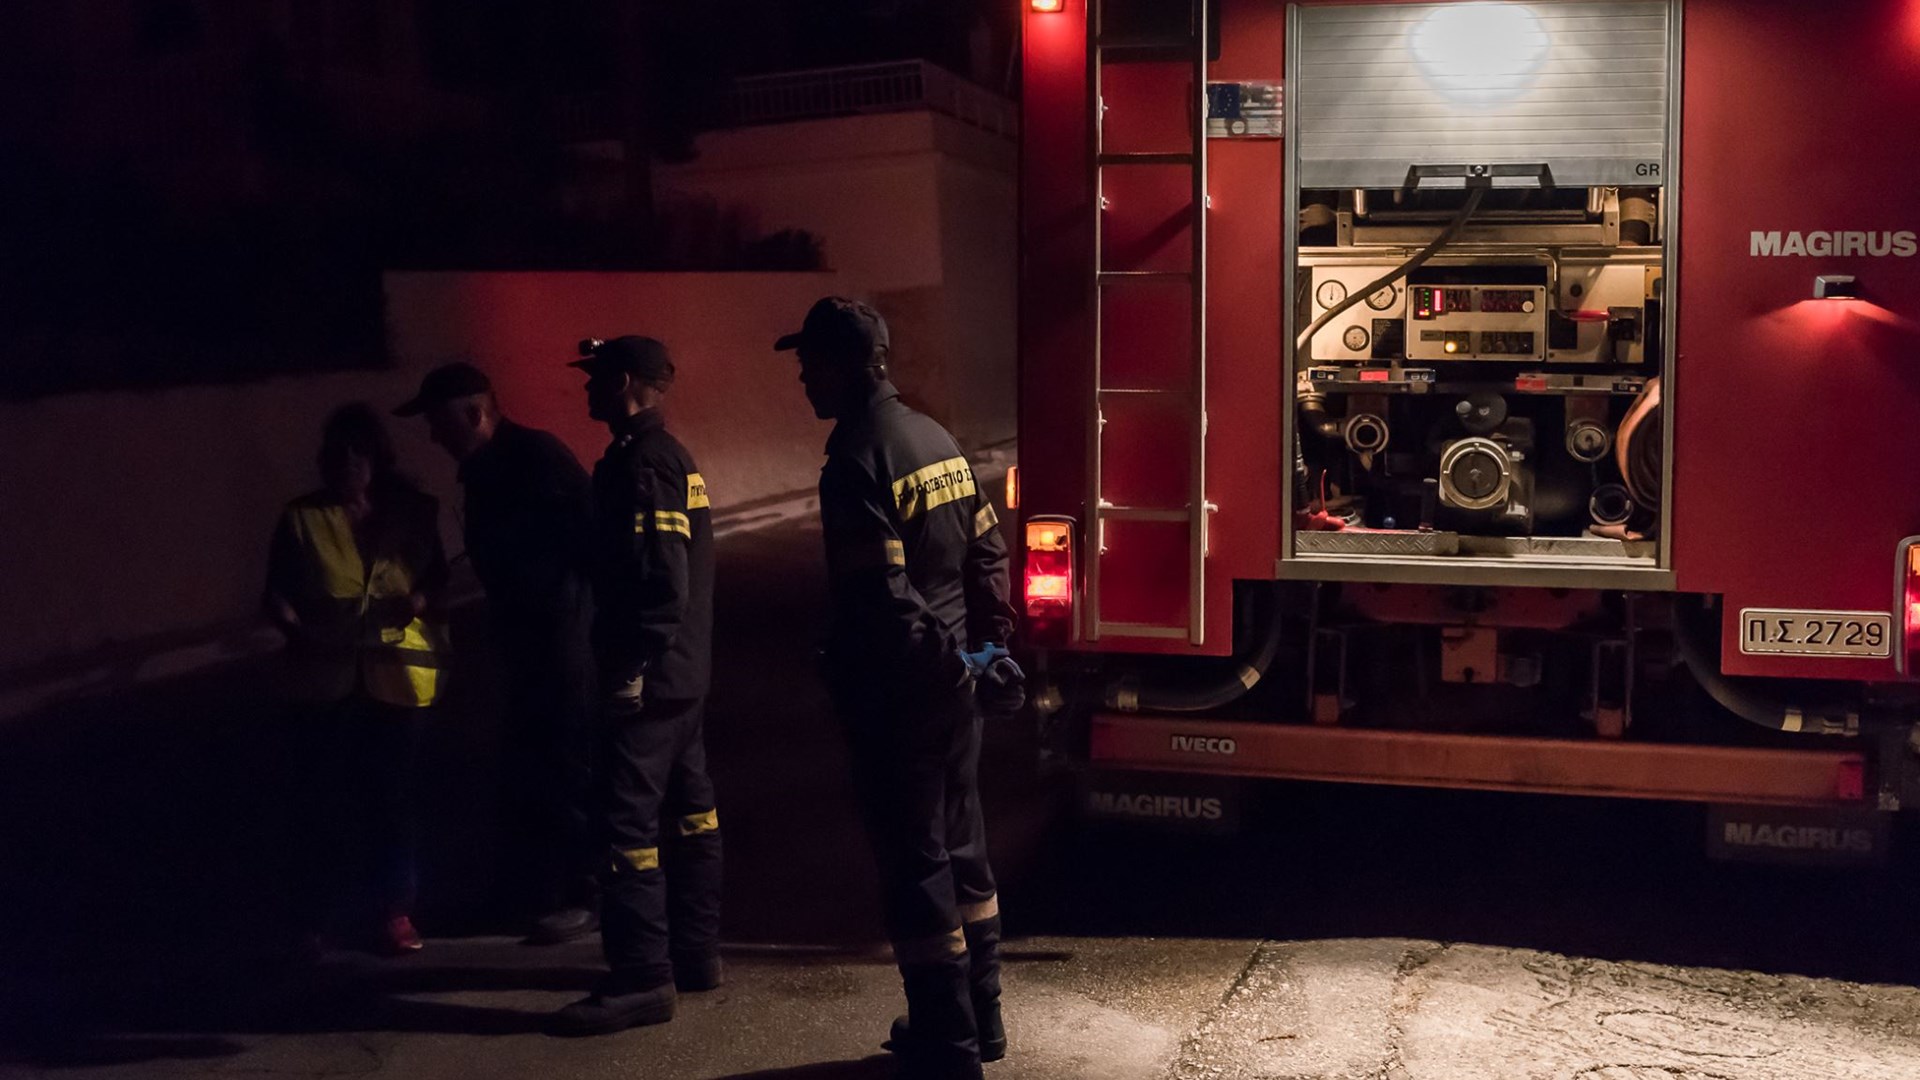 Εντοπίστηκε νεκρός ένας άνδρας κατά την κατάσβεση φωτιάς σε μονοκατοικία στις Σέρρες – ΤΩΡΑ